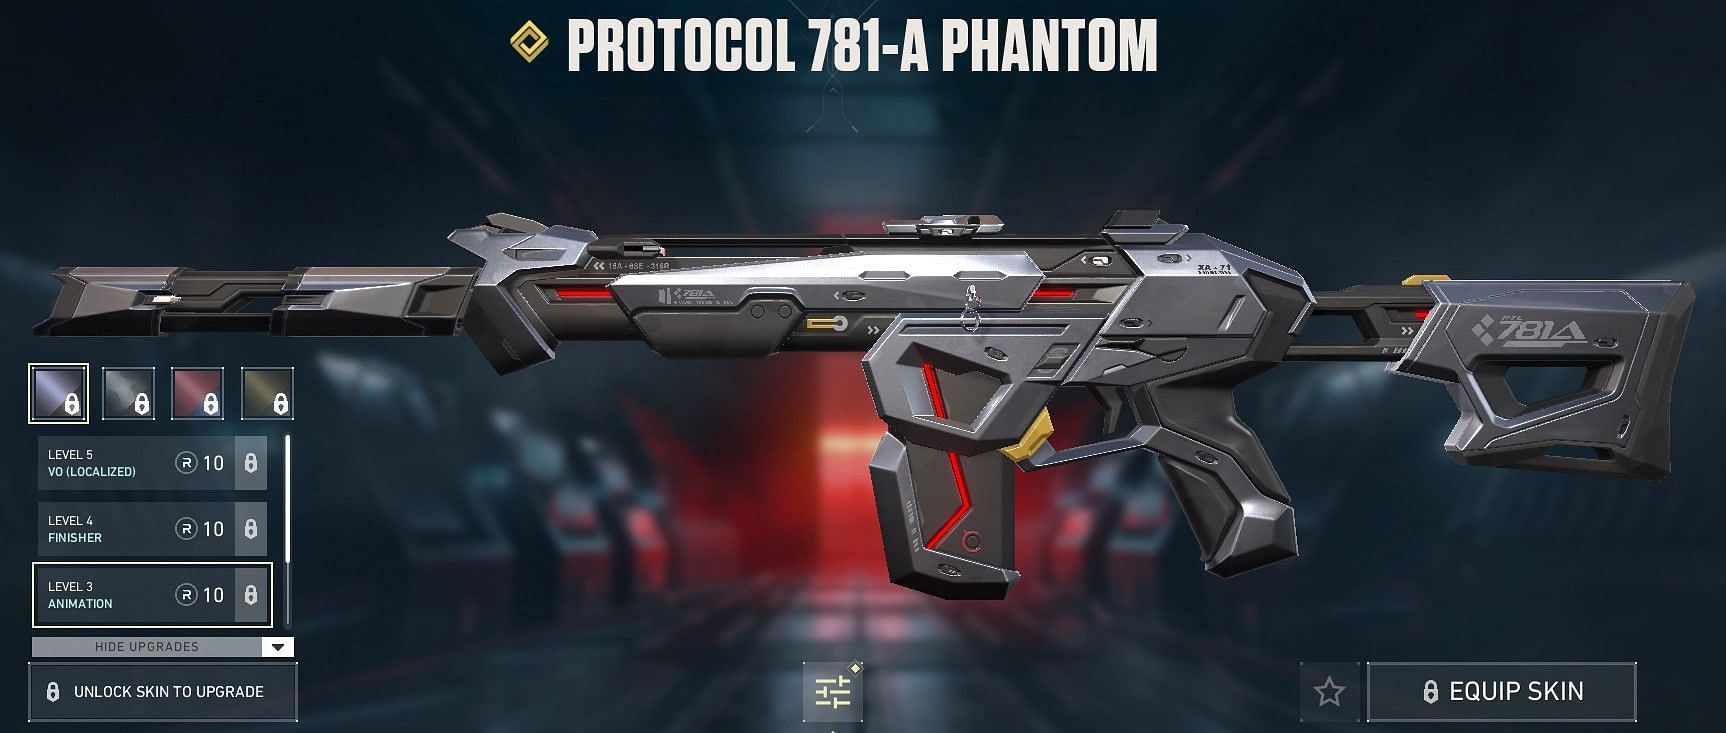 Protocol 781-A Phantom (Image via Riot Games)